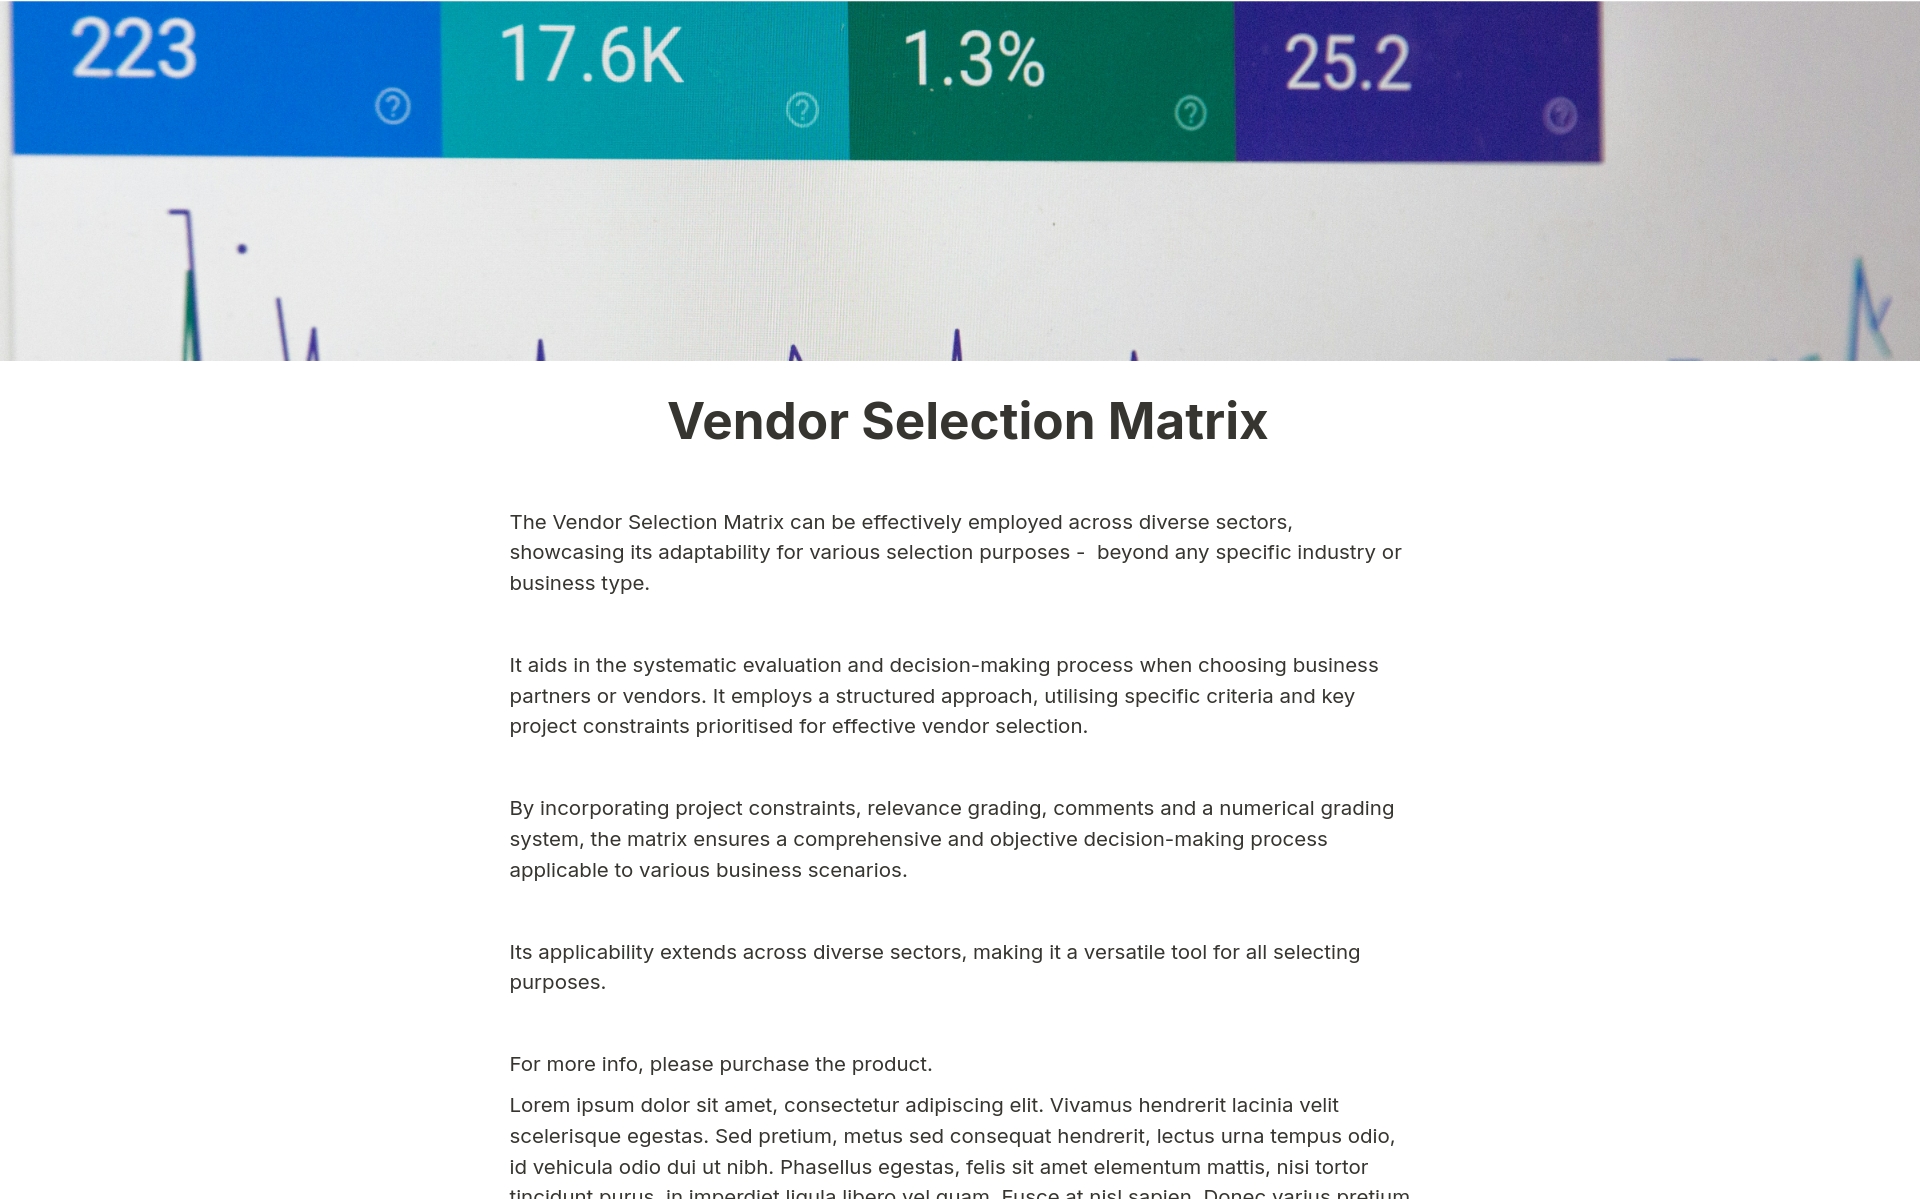 Uma prévia do modelo para Vendor Selection Matrix